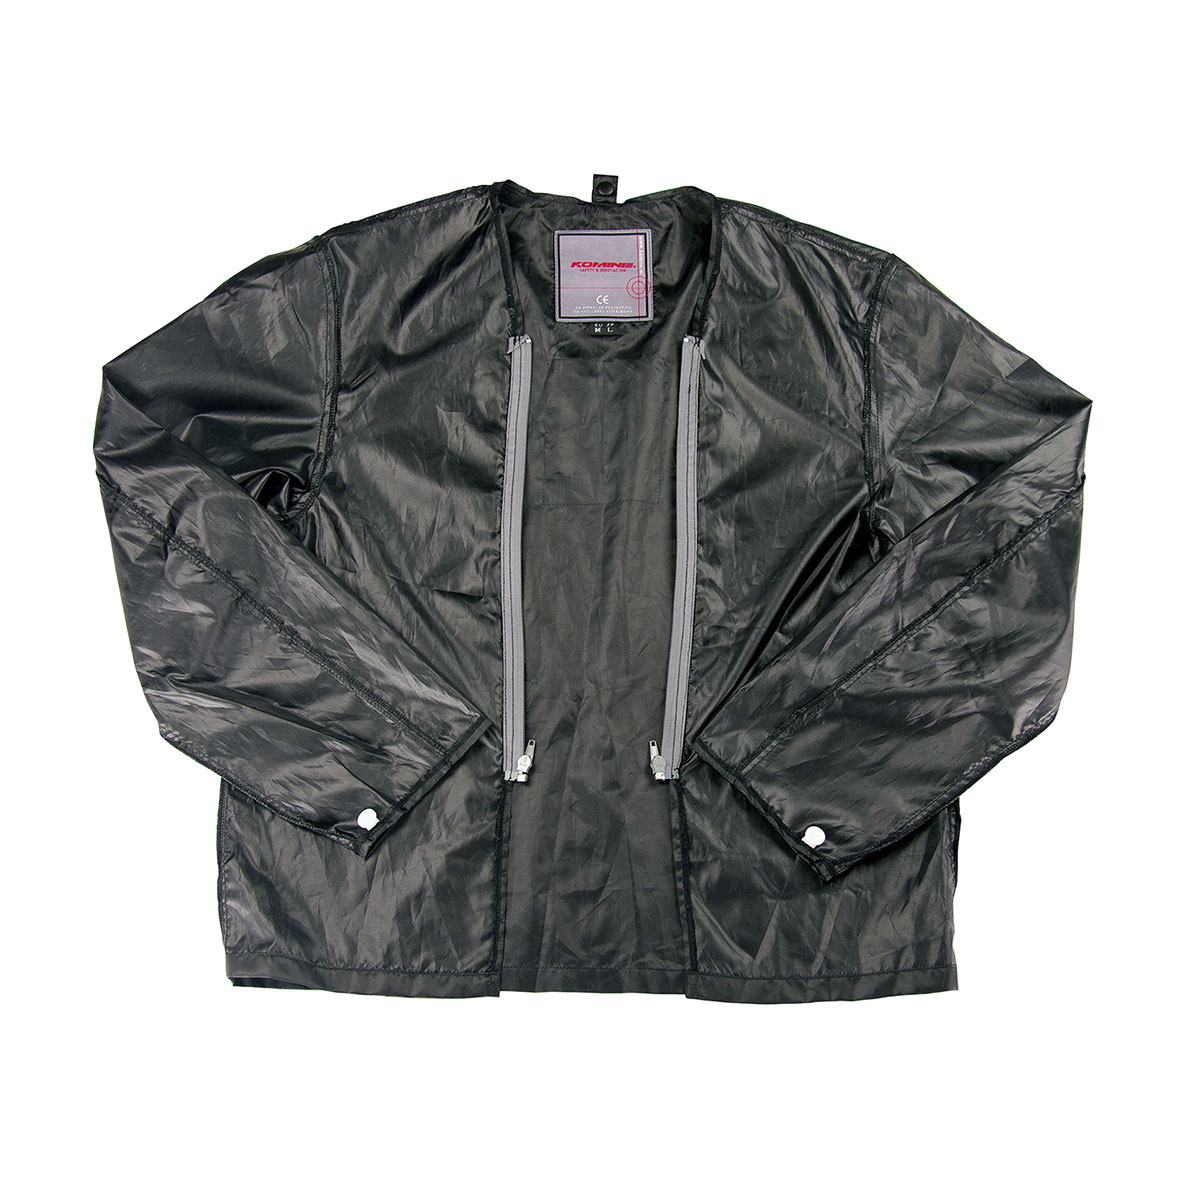 コミネ KOMINE バイク用 ジャケット Jacket JK-051 ウインドプルーフライニングジャケット ブラック 黒 Lサイズ 07-051/BK/L